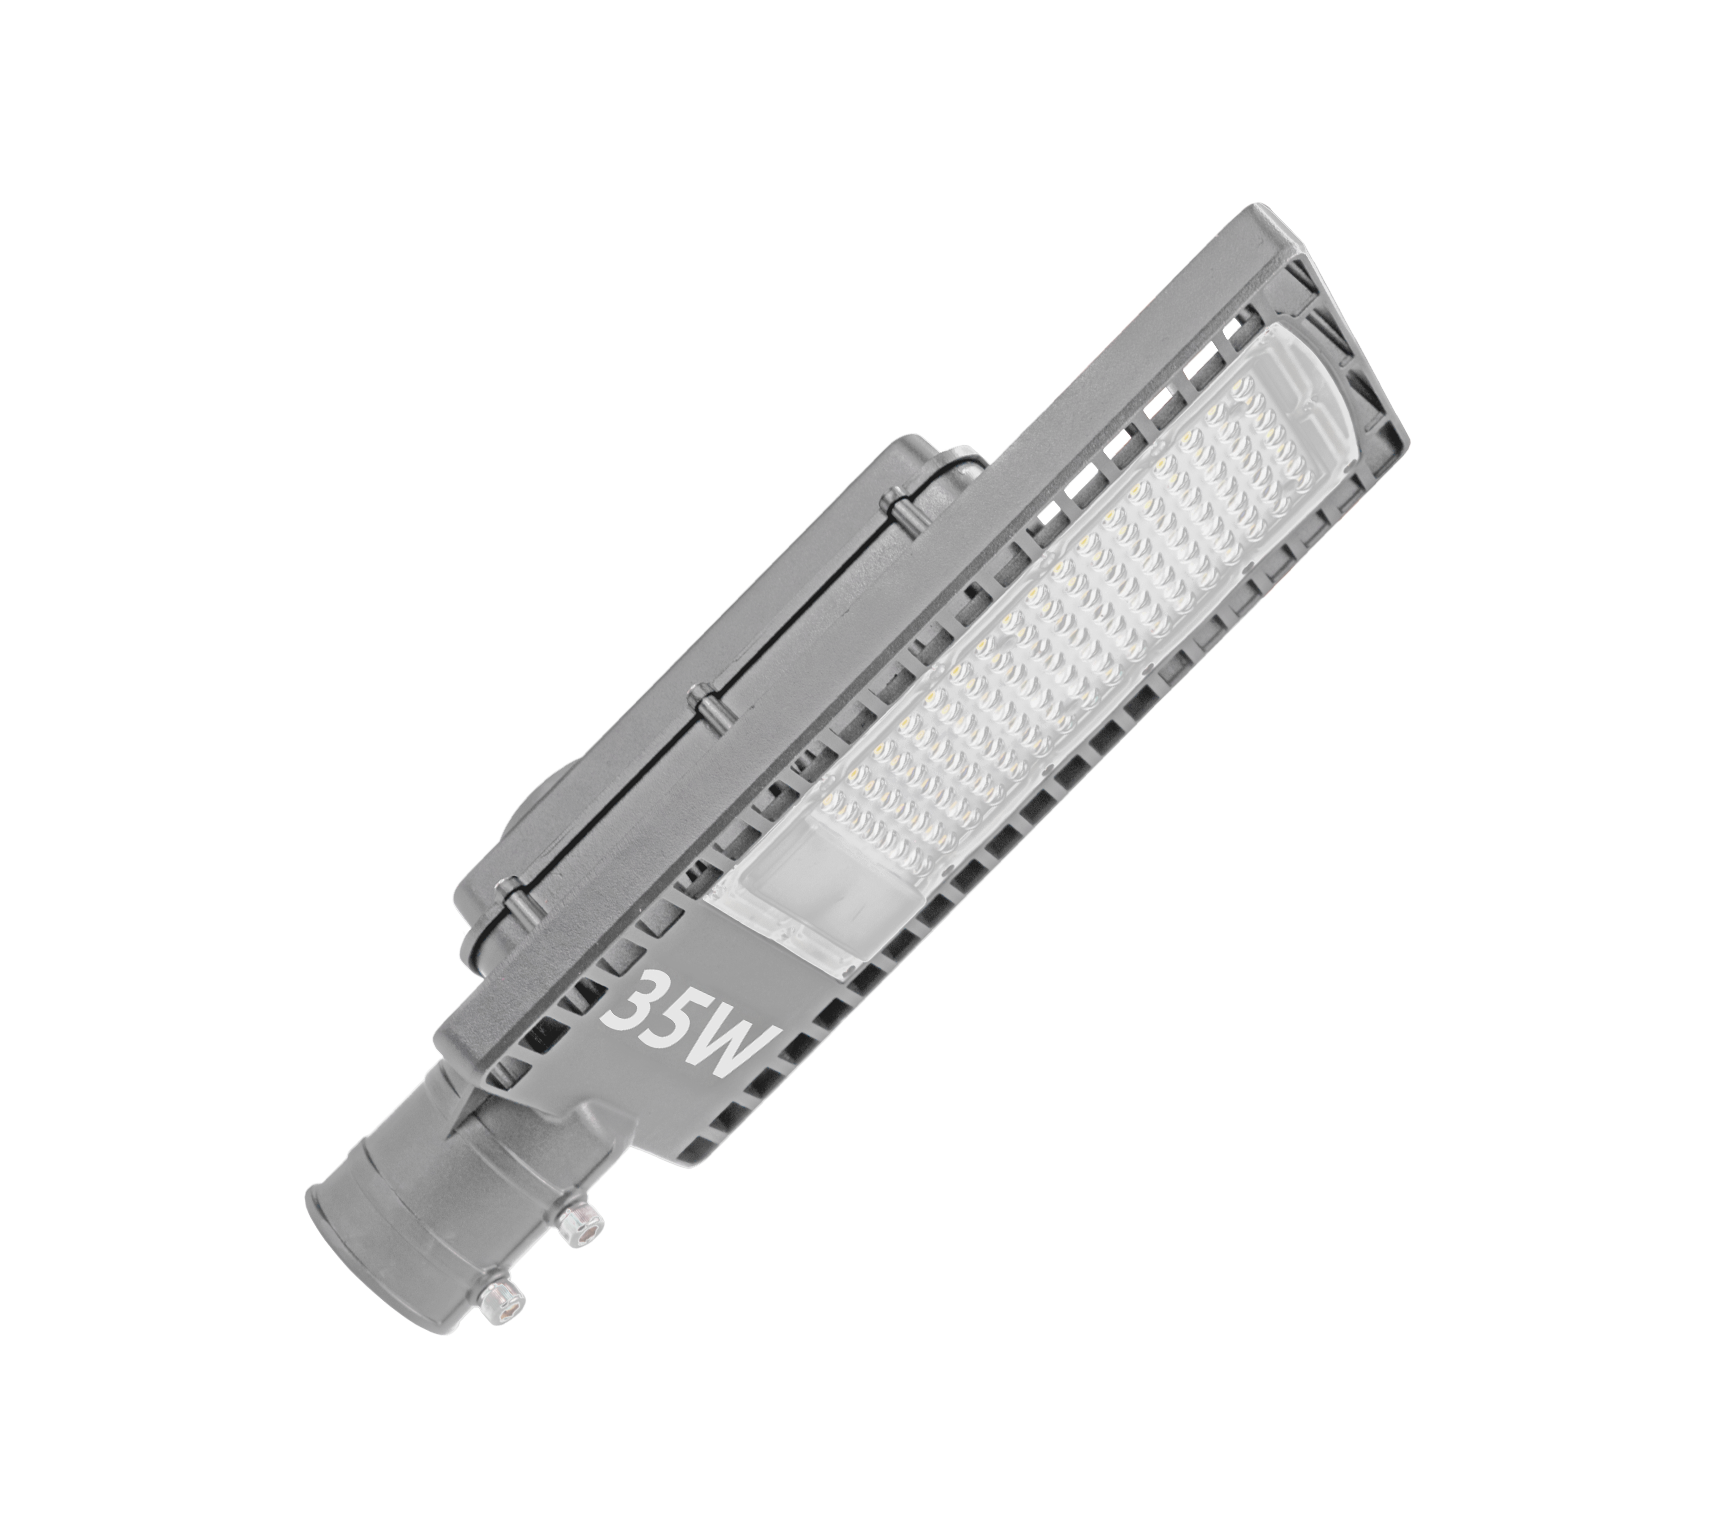 GL421-LED-35-50-3C <span>(caixa)</span><br/>